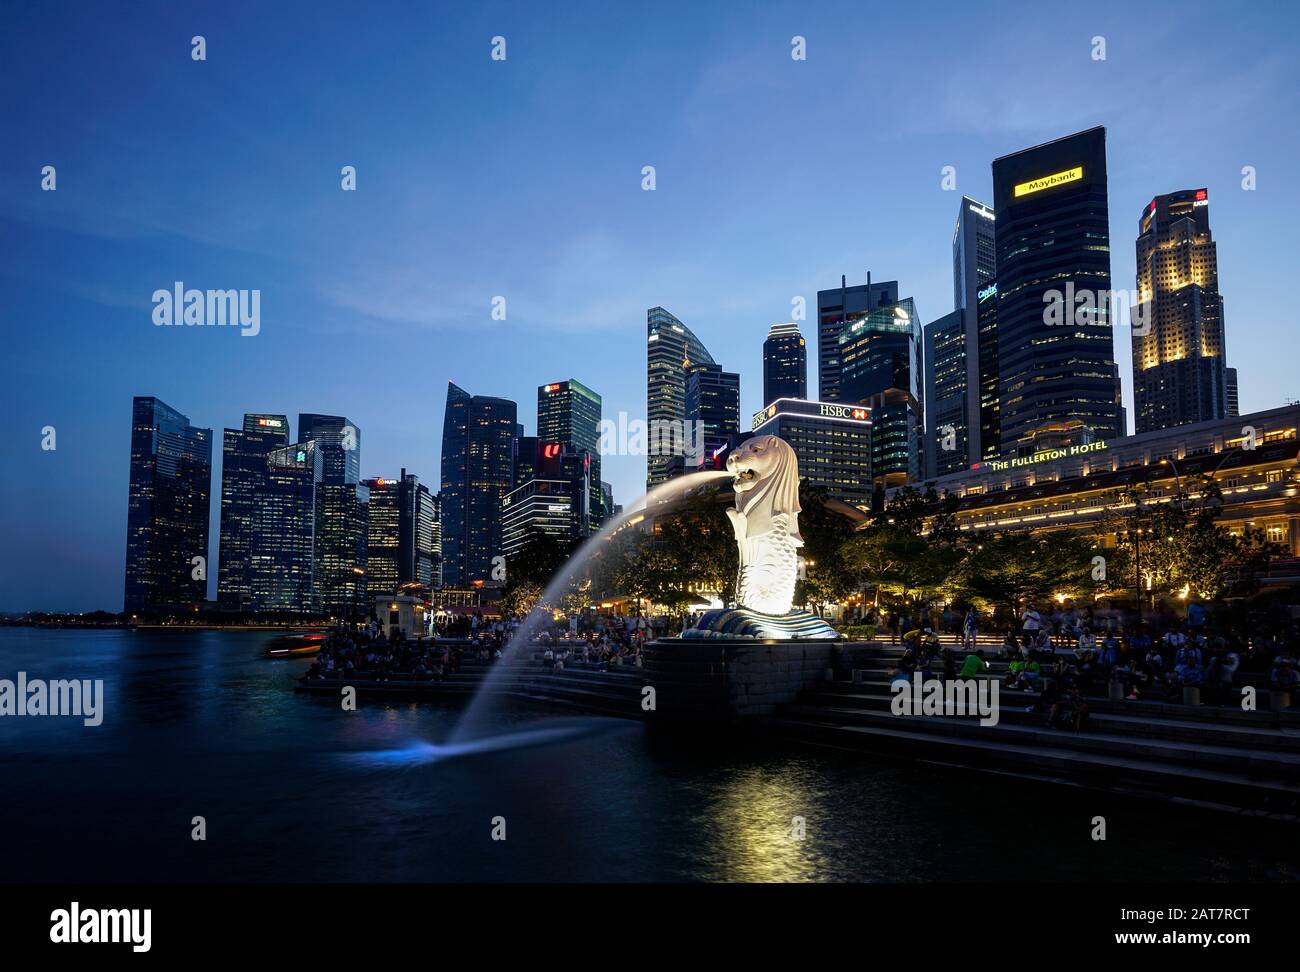 Singapur. Januar 2020. Der Merlion-Brunnen ist das offizielle Maskottchen Singapurs, das als Fabelwesen mit Löwenkopf und Körper dargestellt wird Stockfoto